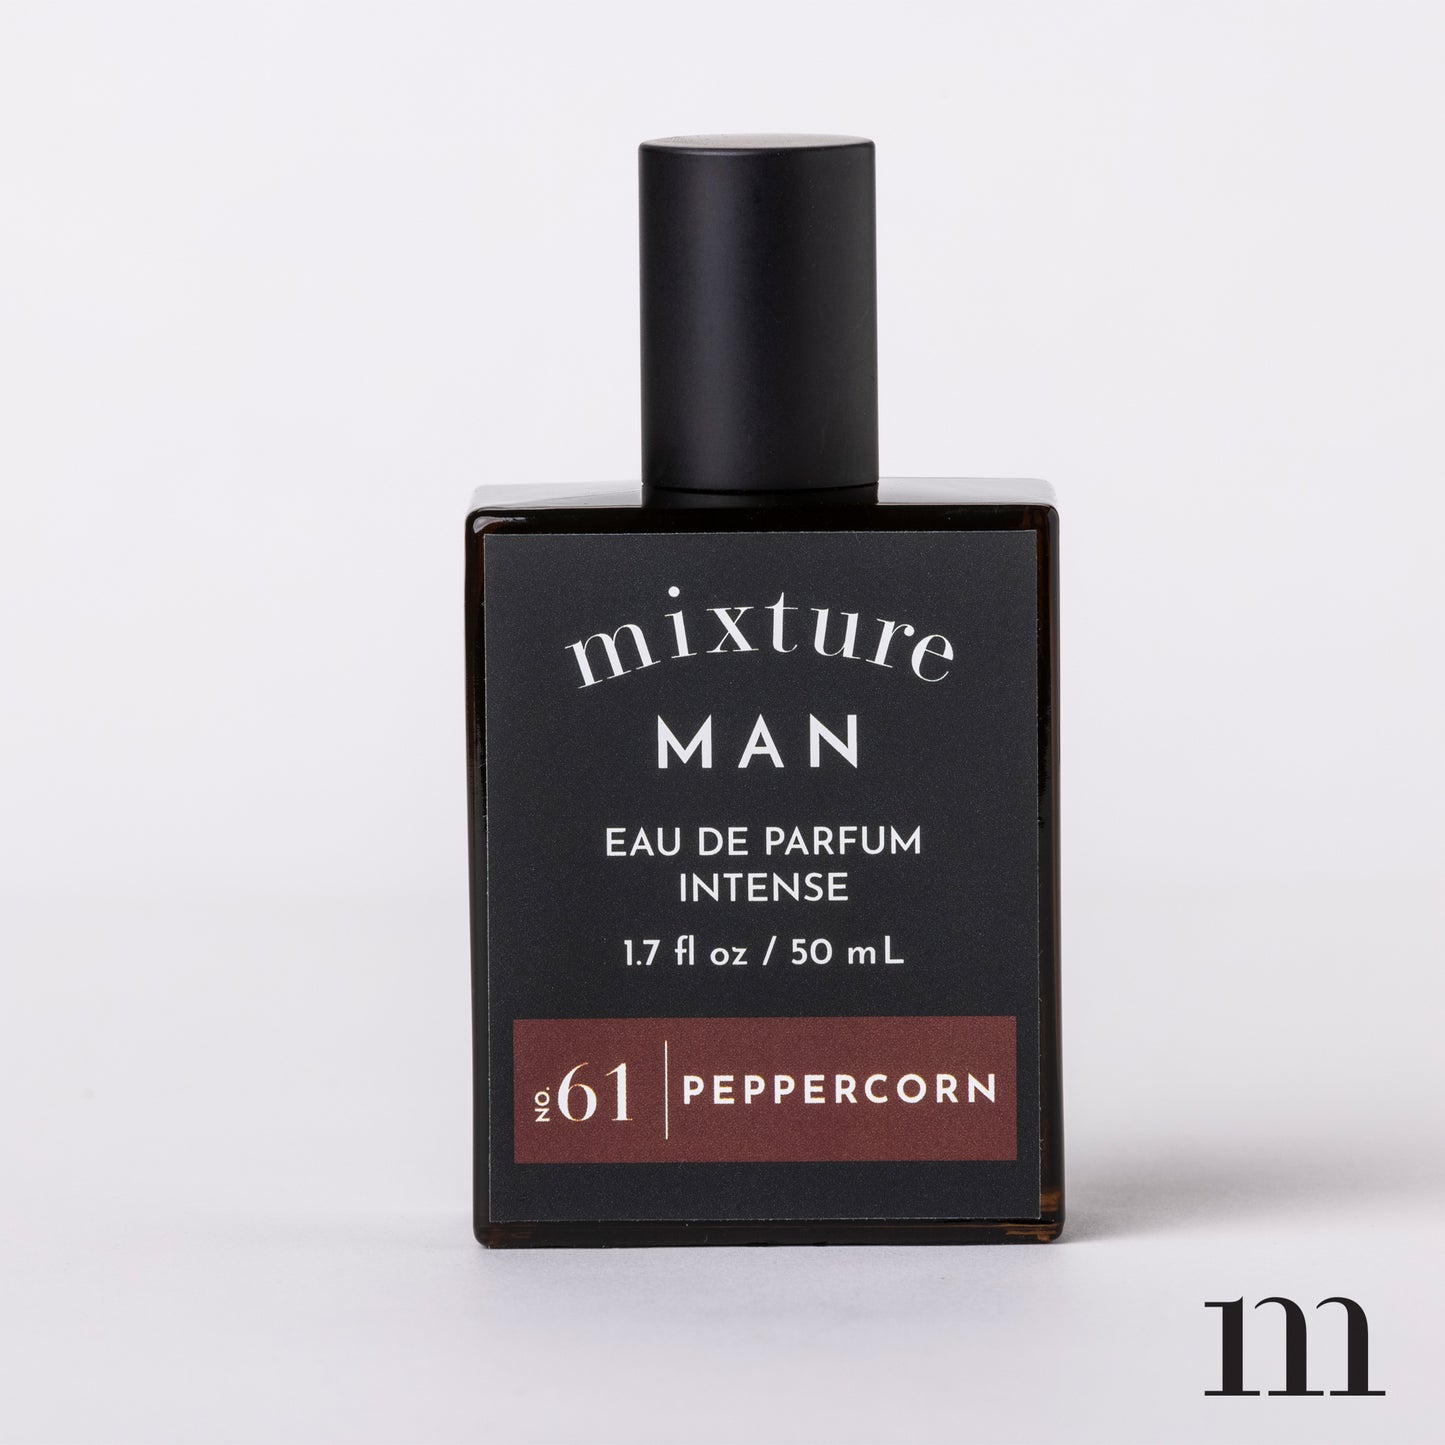 Mixture Man 1.7oz Eau de Parfum Intense - Peppercorn